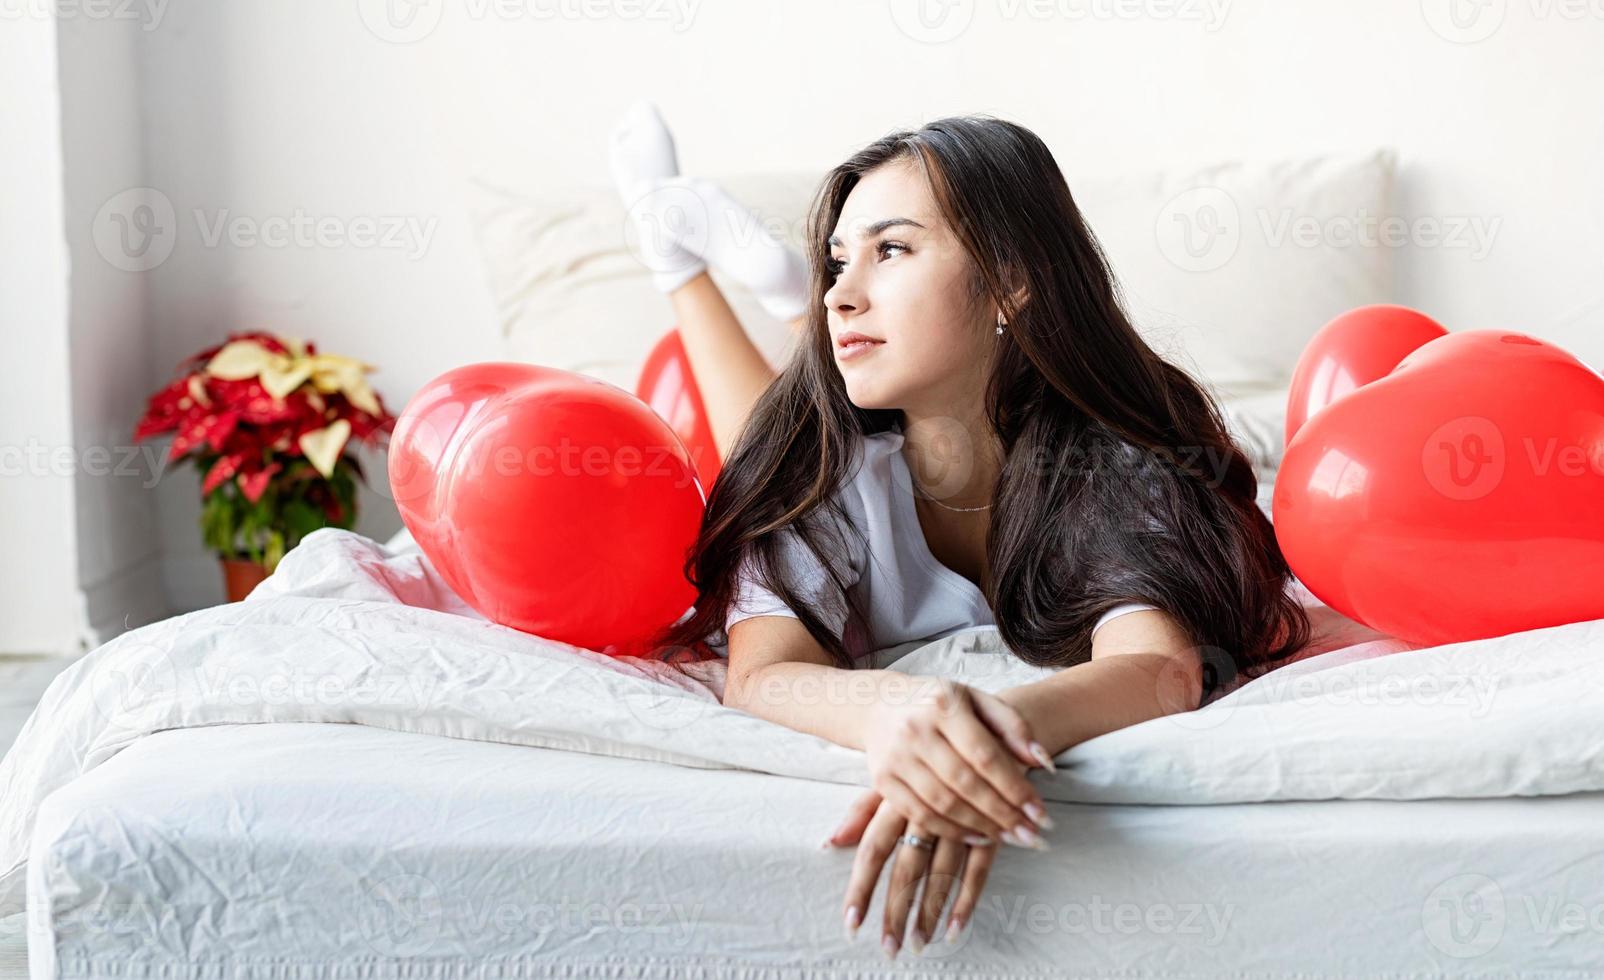 jonge, gelukkige brunette vrouw die in bed ligt met rode hartvormige ballonnen foto